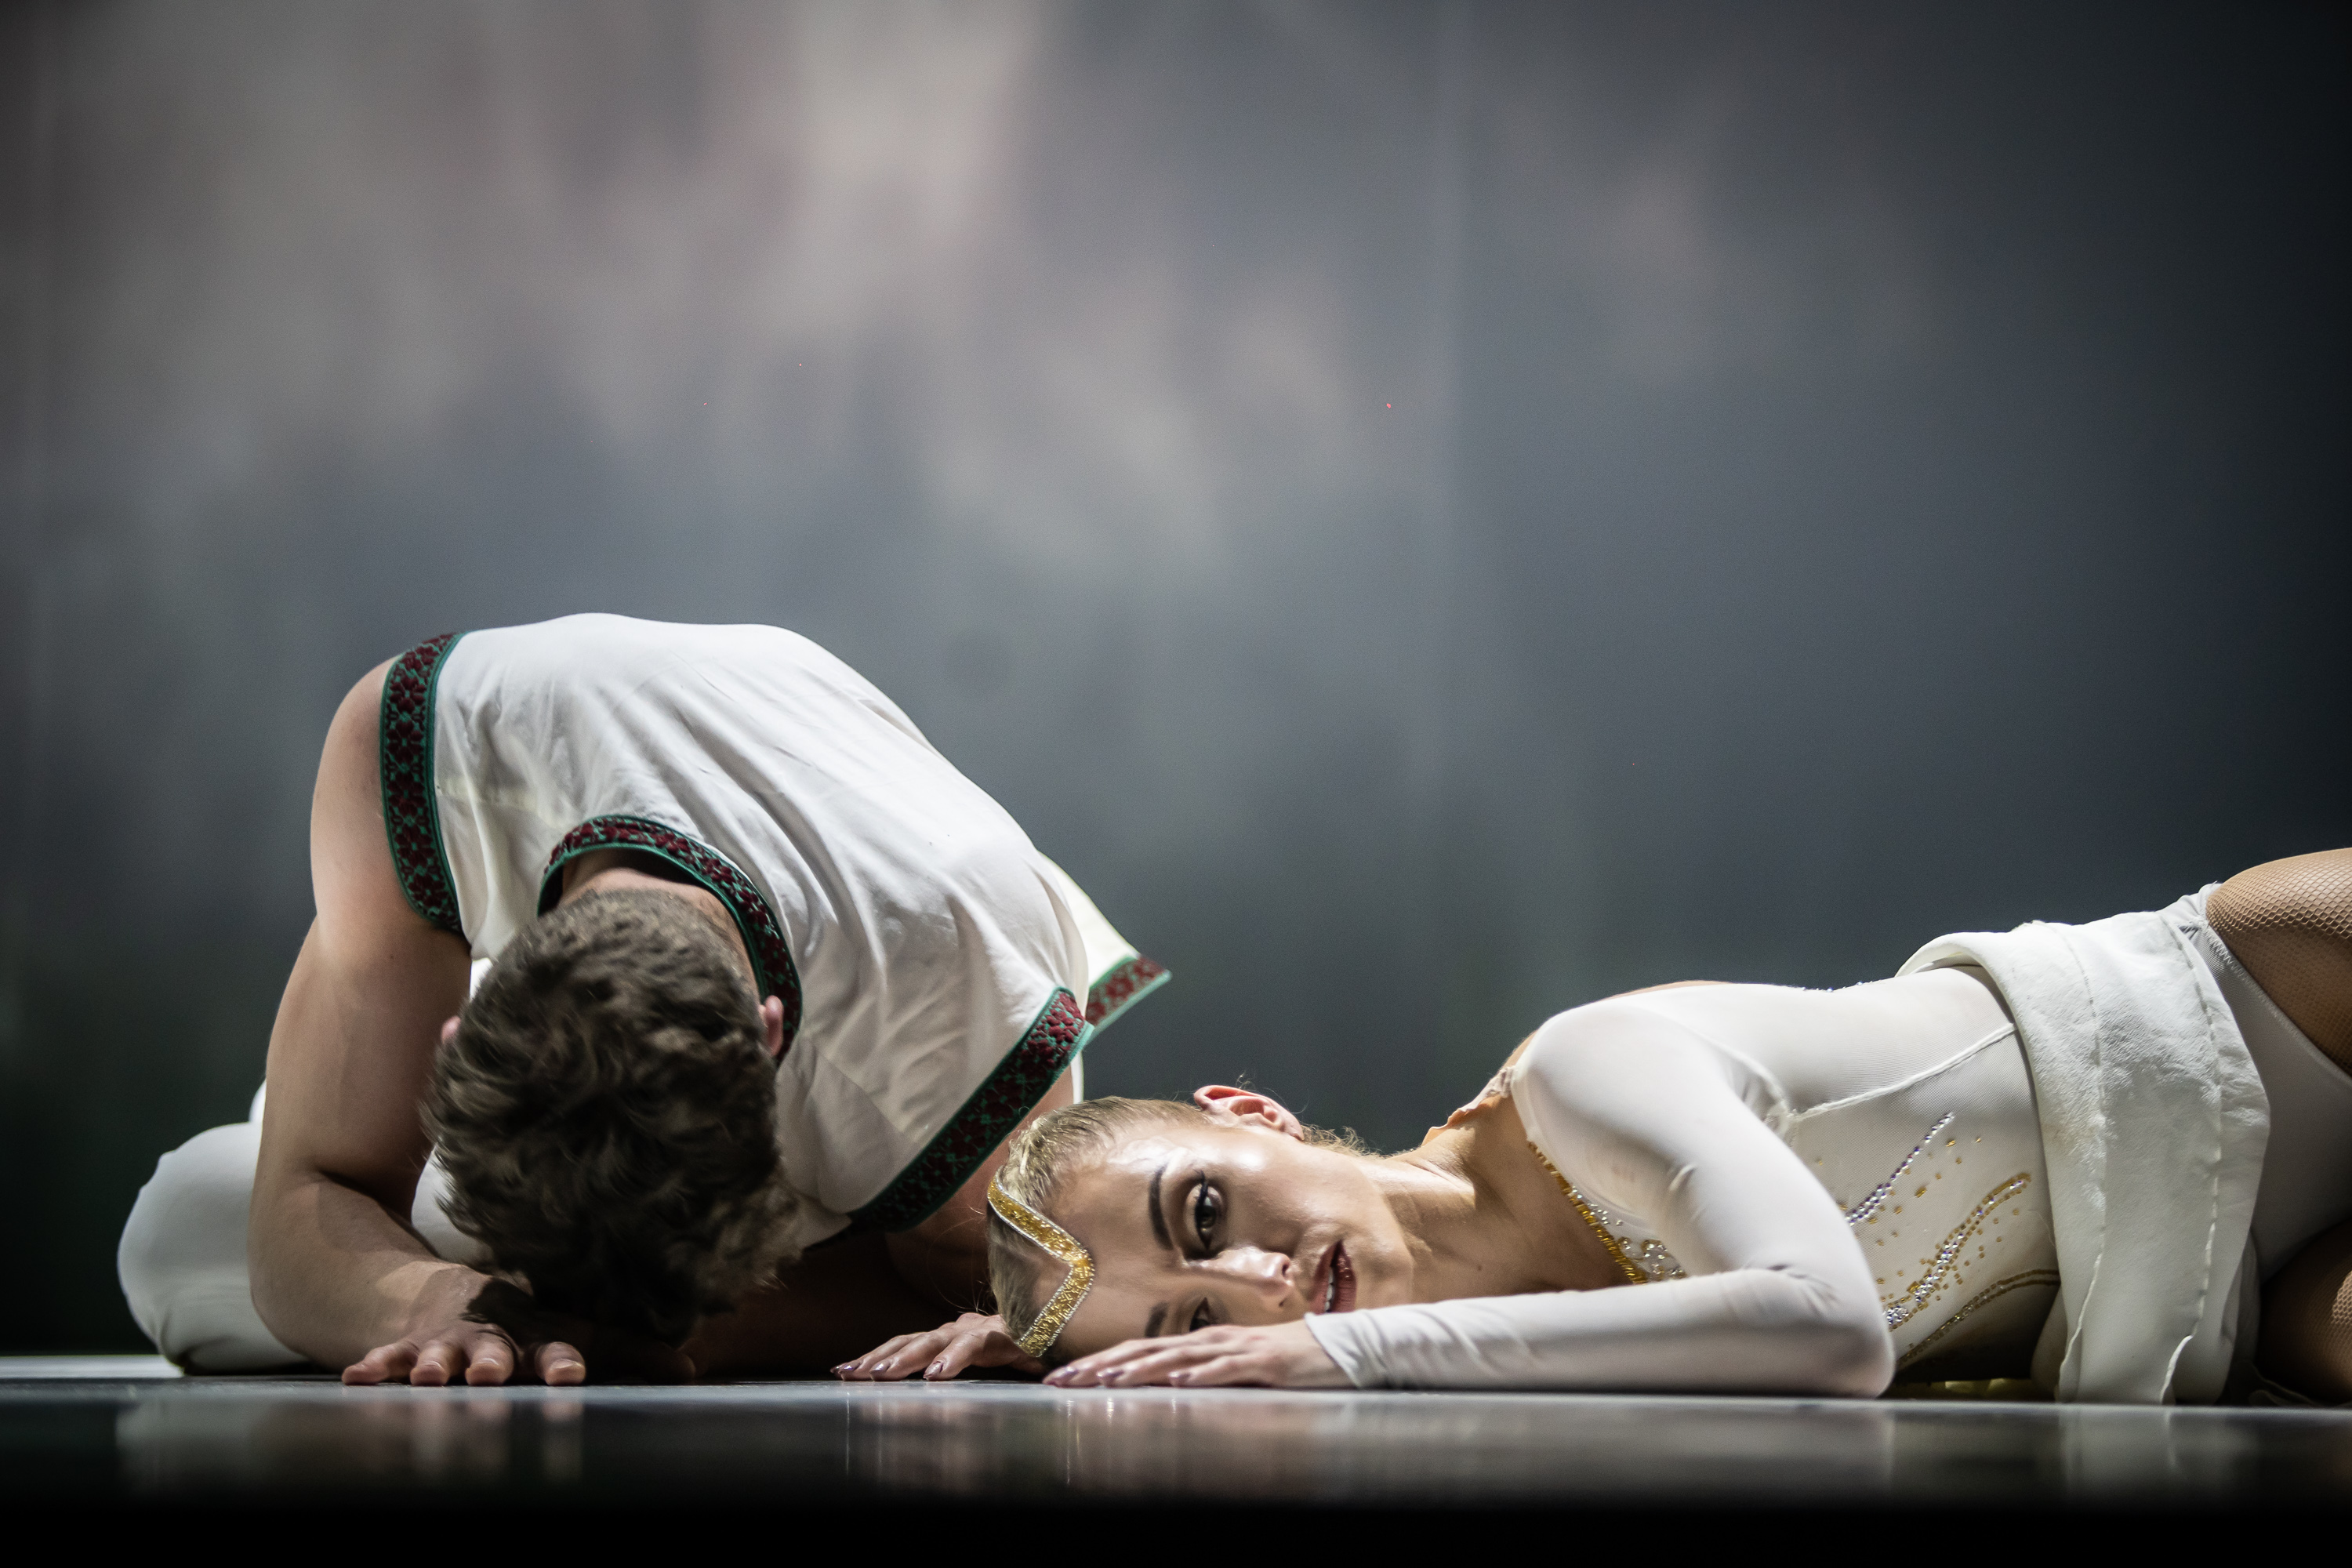 Baltijos baleto teatras | Nacionalinis baletas „Vaivos juosta"